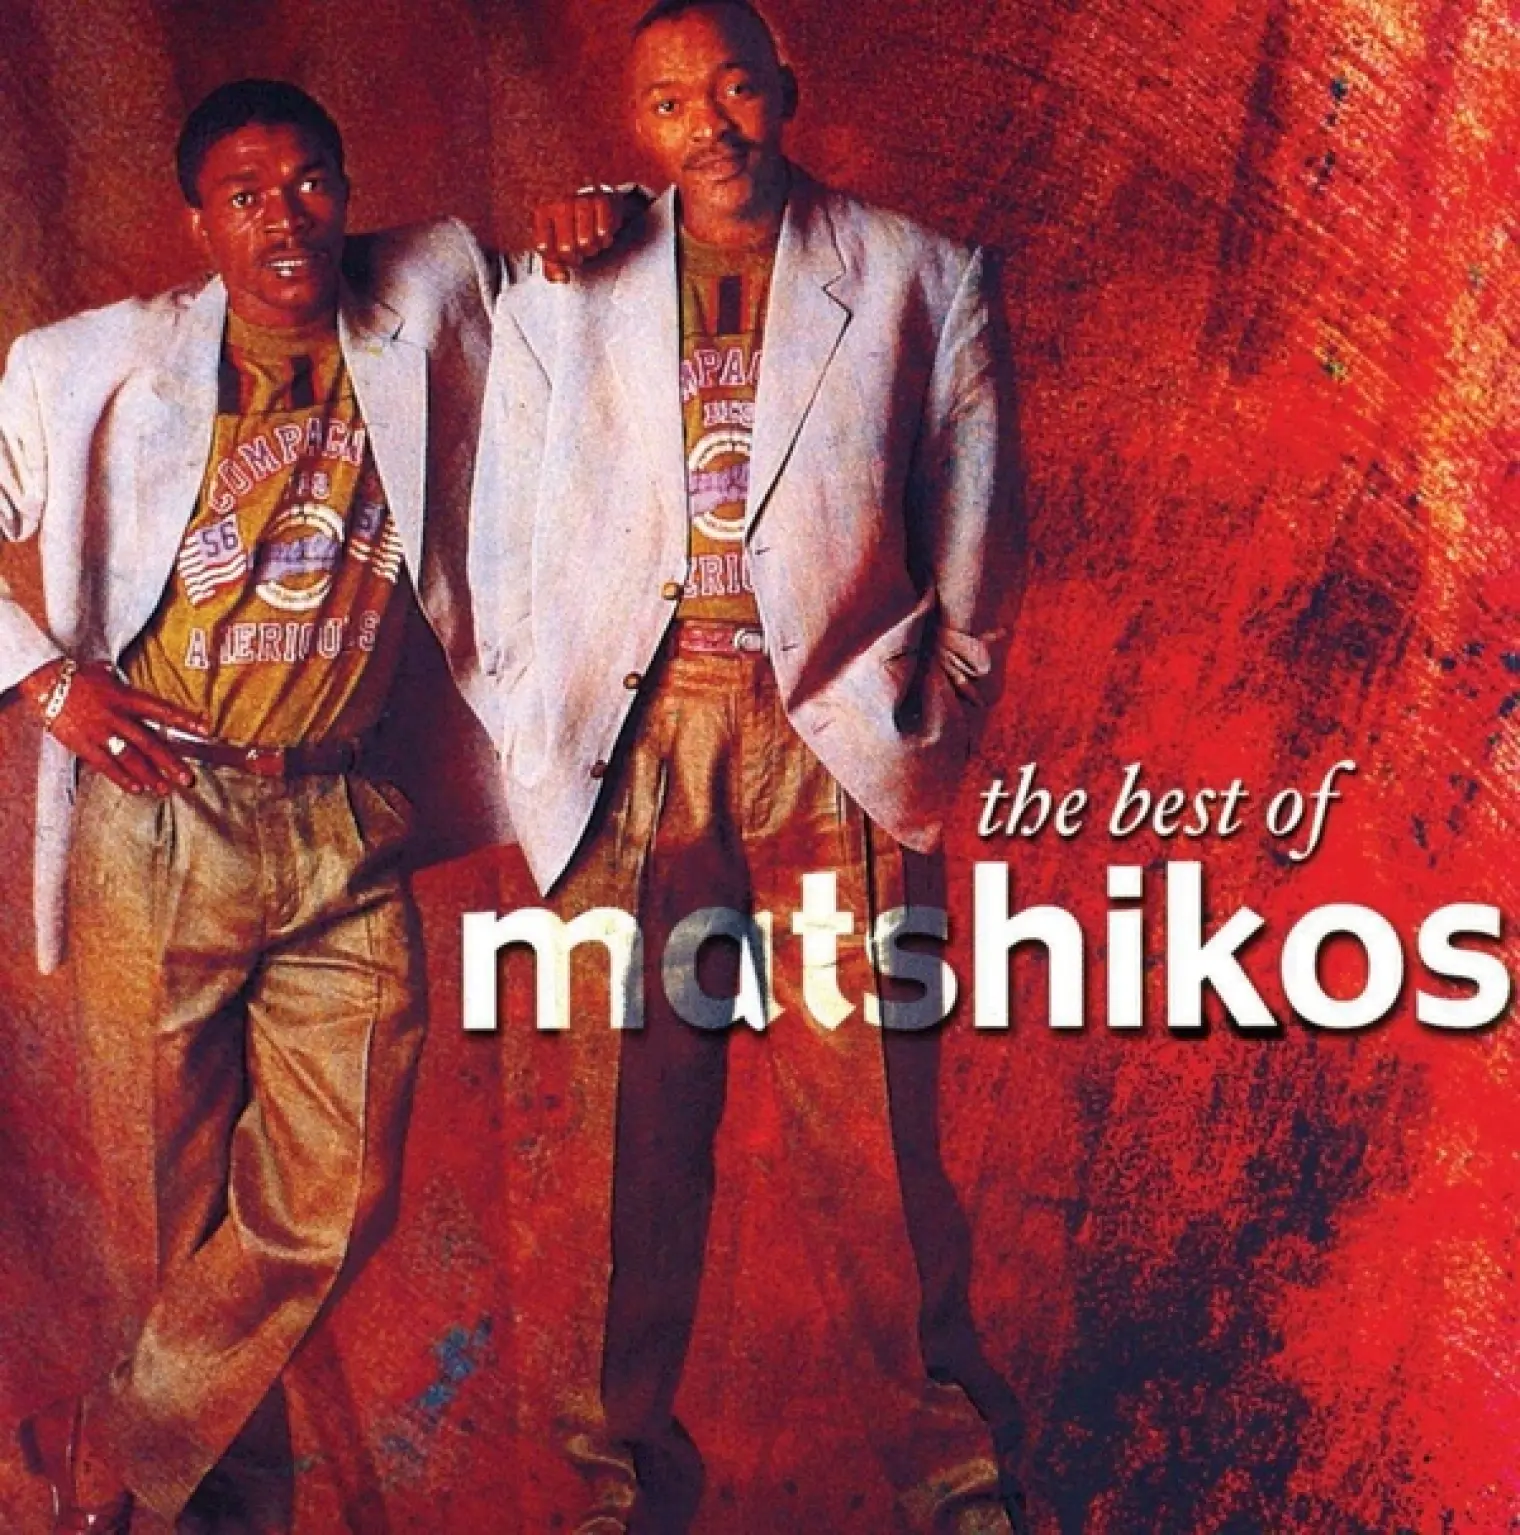 The Best Of -  Matshikos 